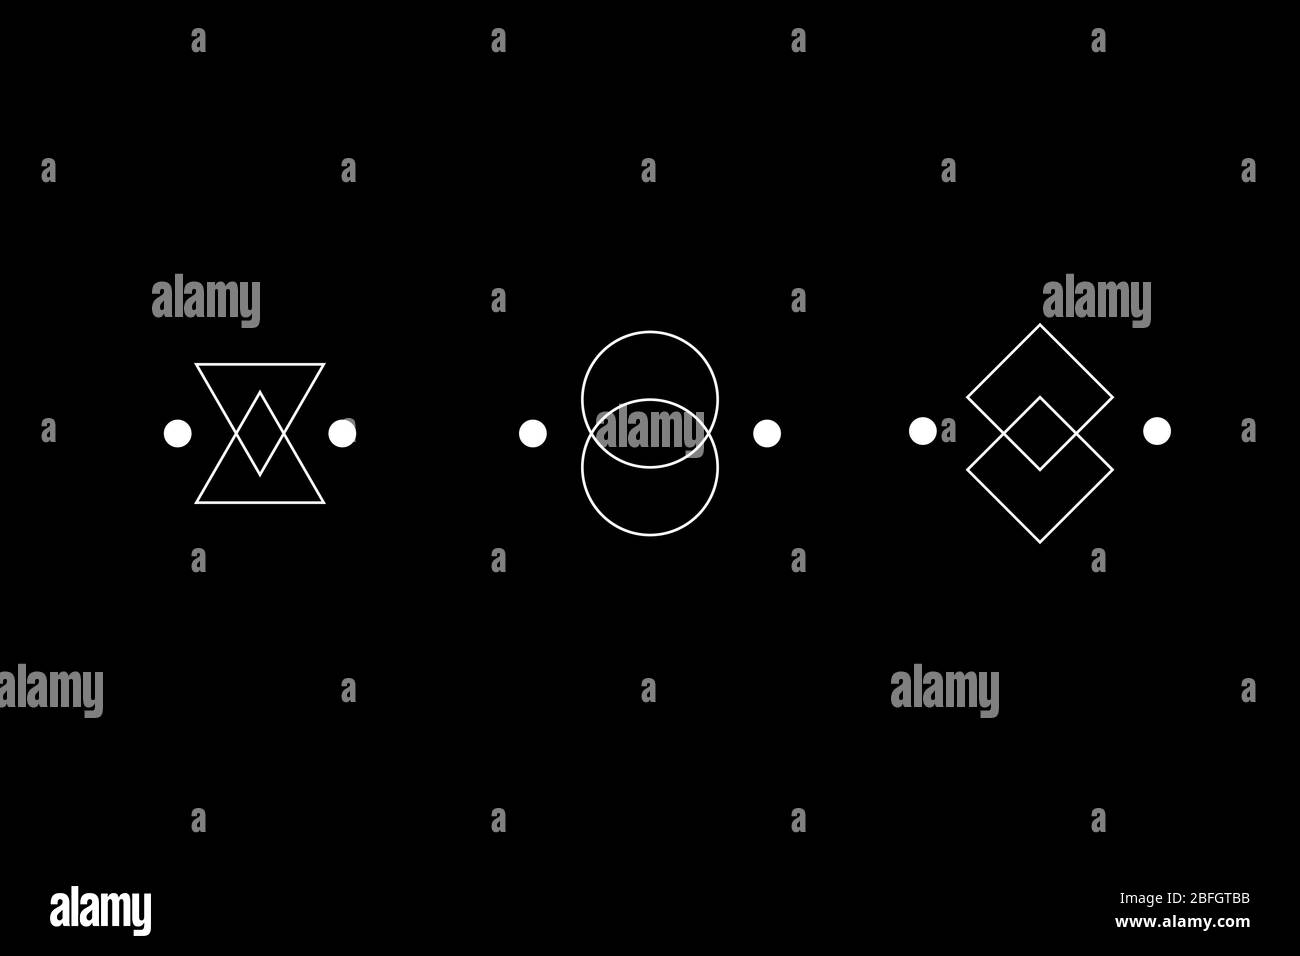 Magische Geometrie einfaches weißes Symbol gesetzt. Kreis, Quadrat, Rauten Figuren. UFO-Zeichen. Design-Symbole für Puzzle, Logik, metroidvania Spiele. Vektorgrafik. Stock Vektor